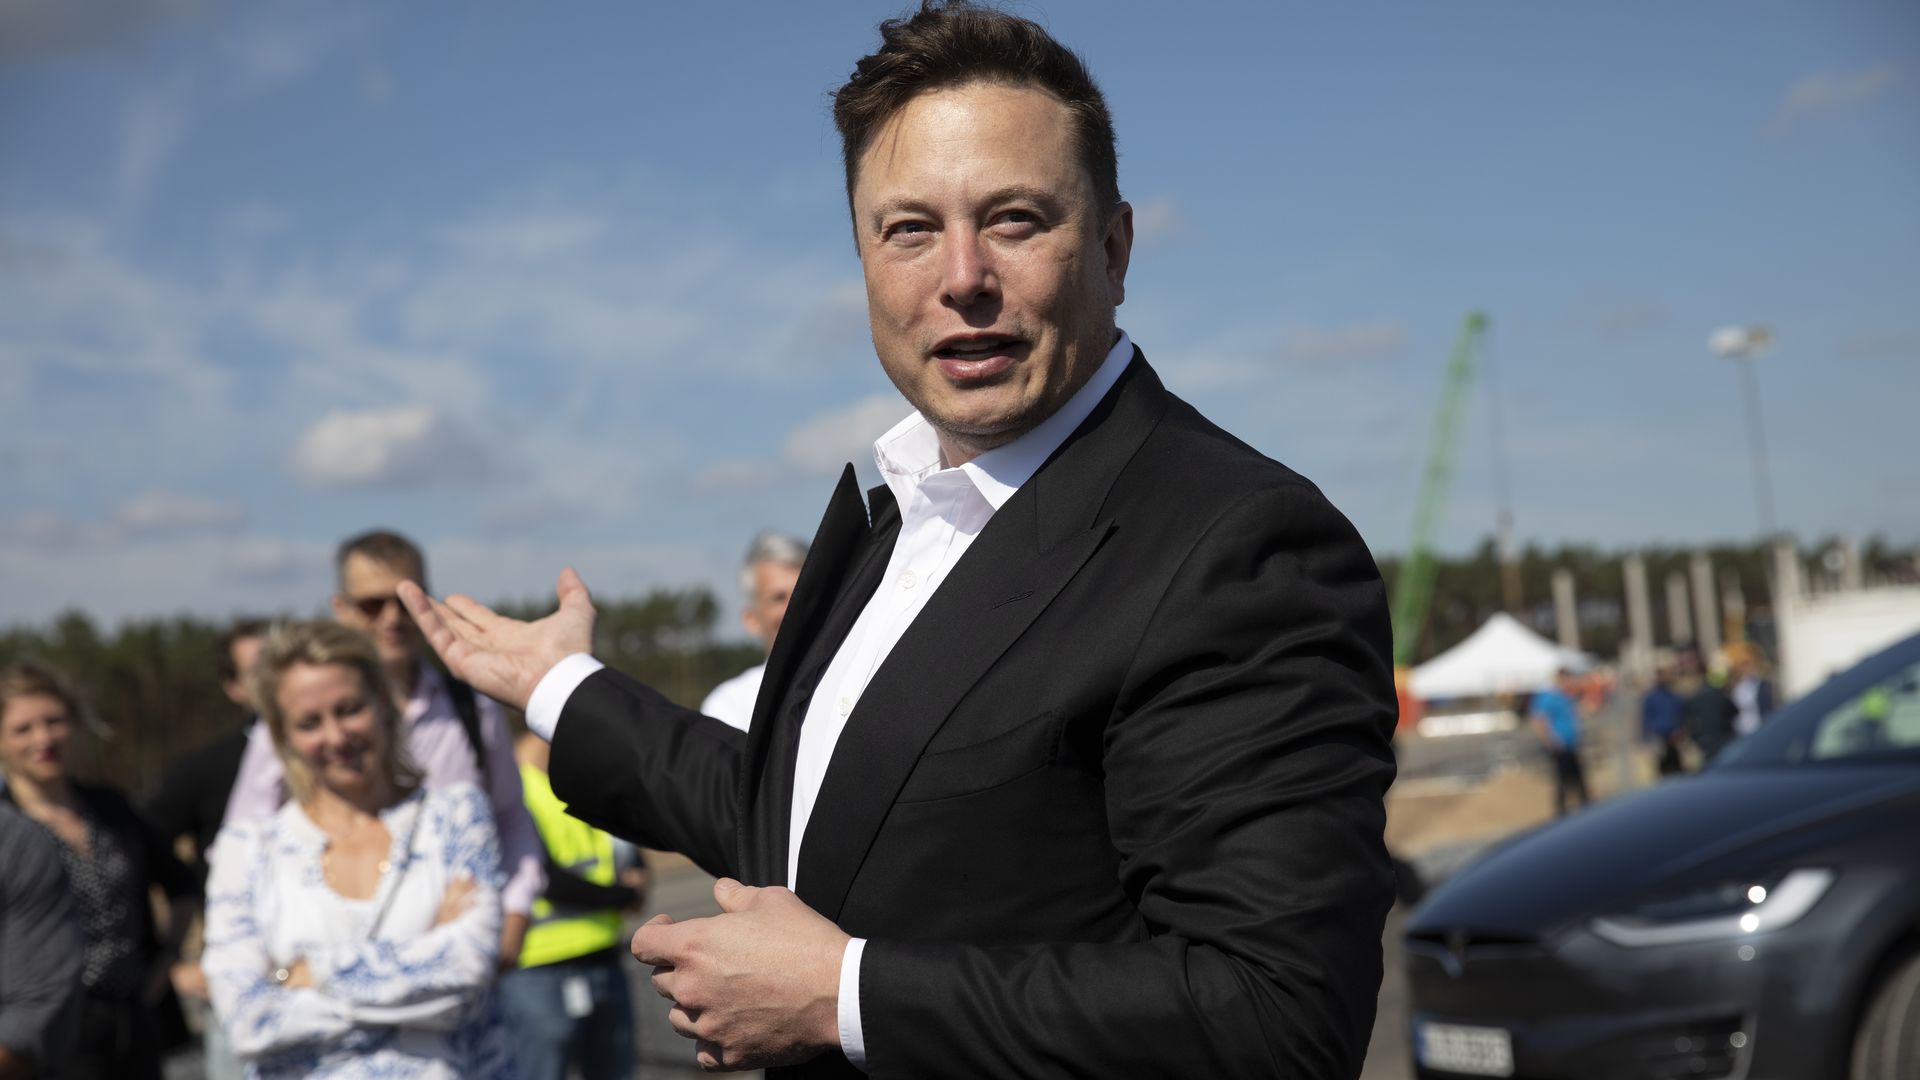 Tesla CEO Elon Musk near Gruenheide, Germany, in September 2020.